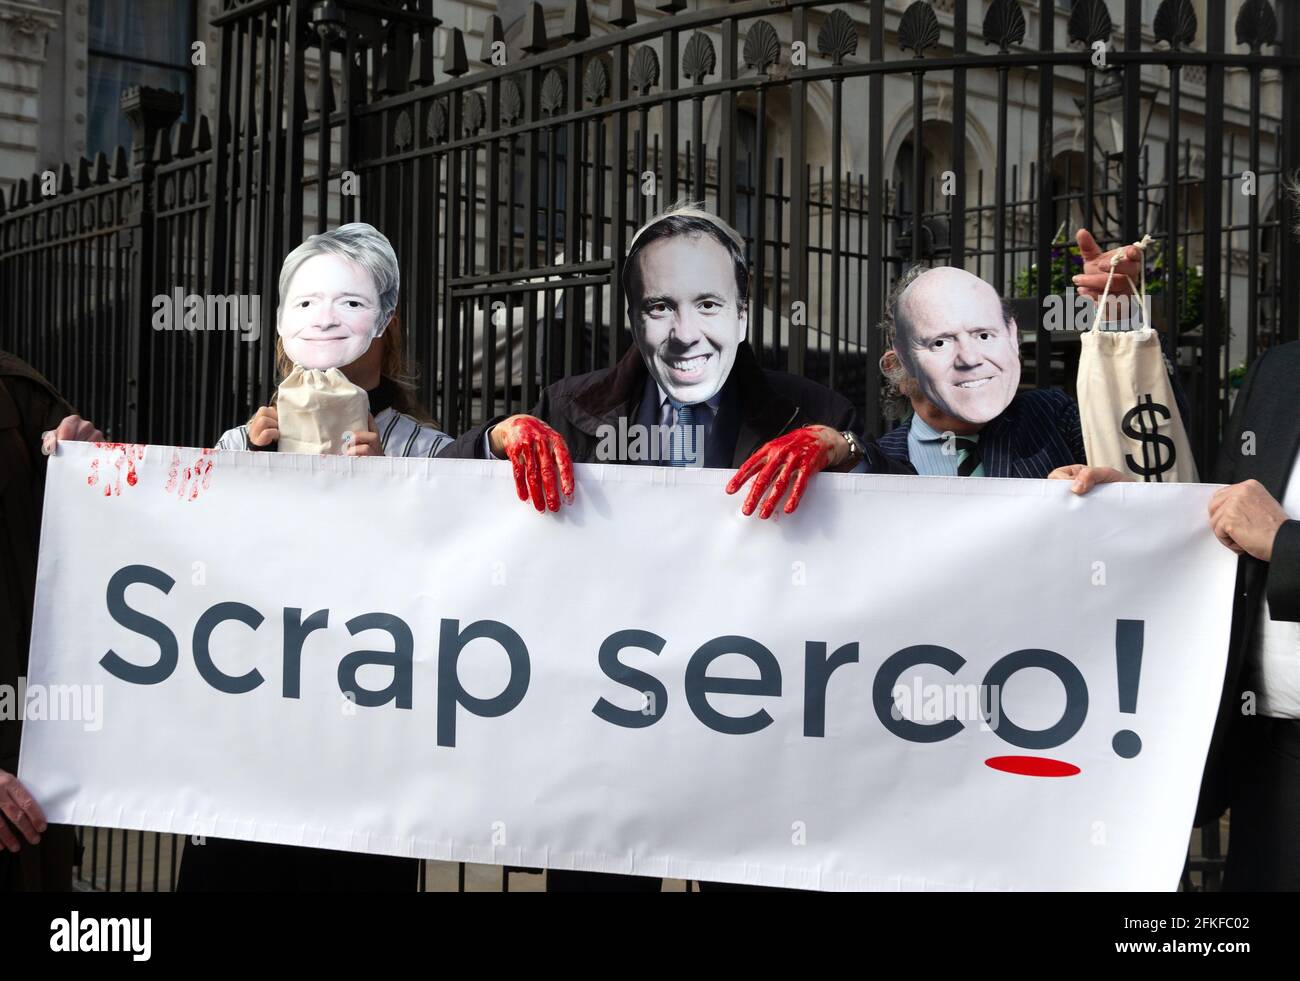 Una dimostrazione a Downing Street che chiede al governo di 'Scrap Serco'. Serco è stato accusato di frode e falsa contabilità come profitti salire. Foto Stock